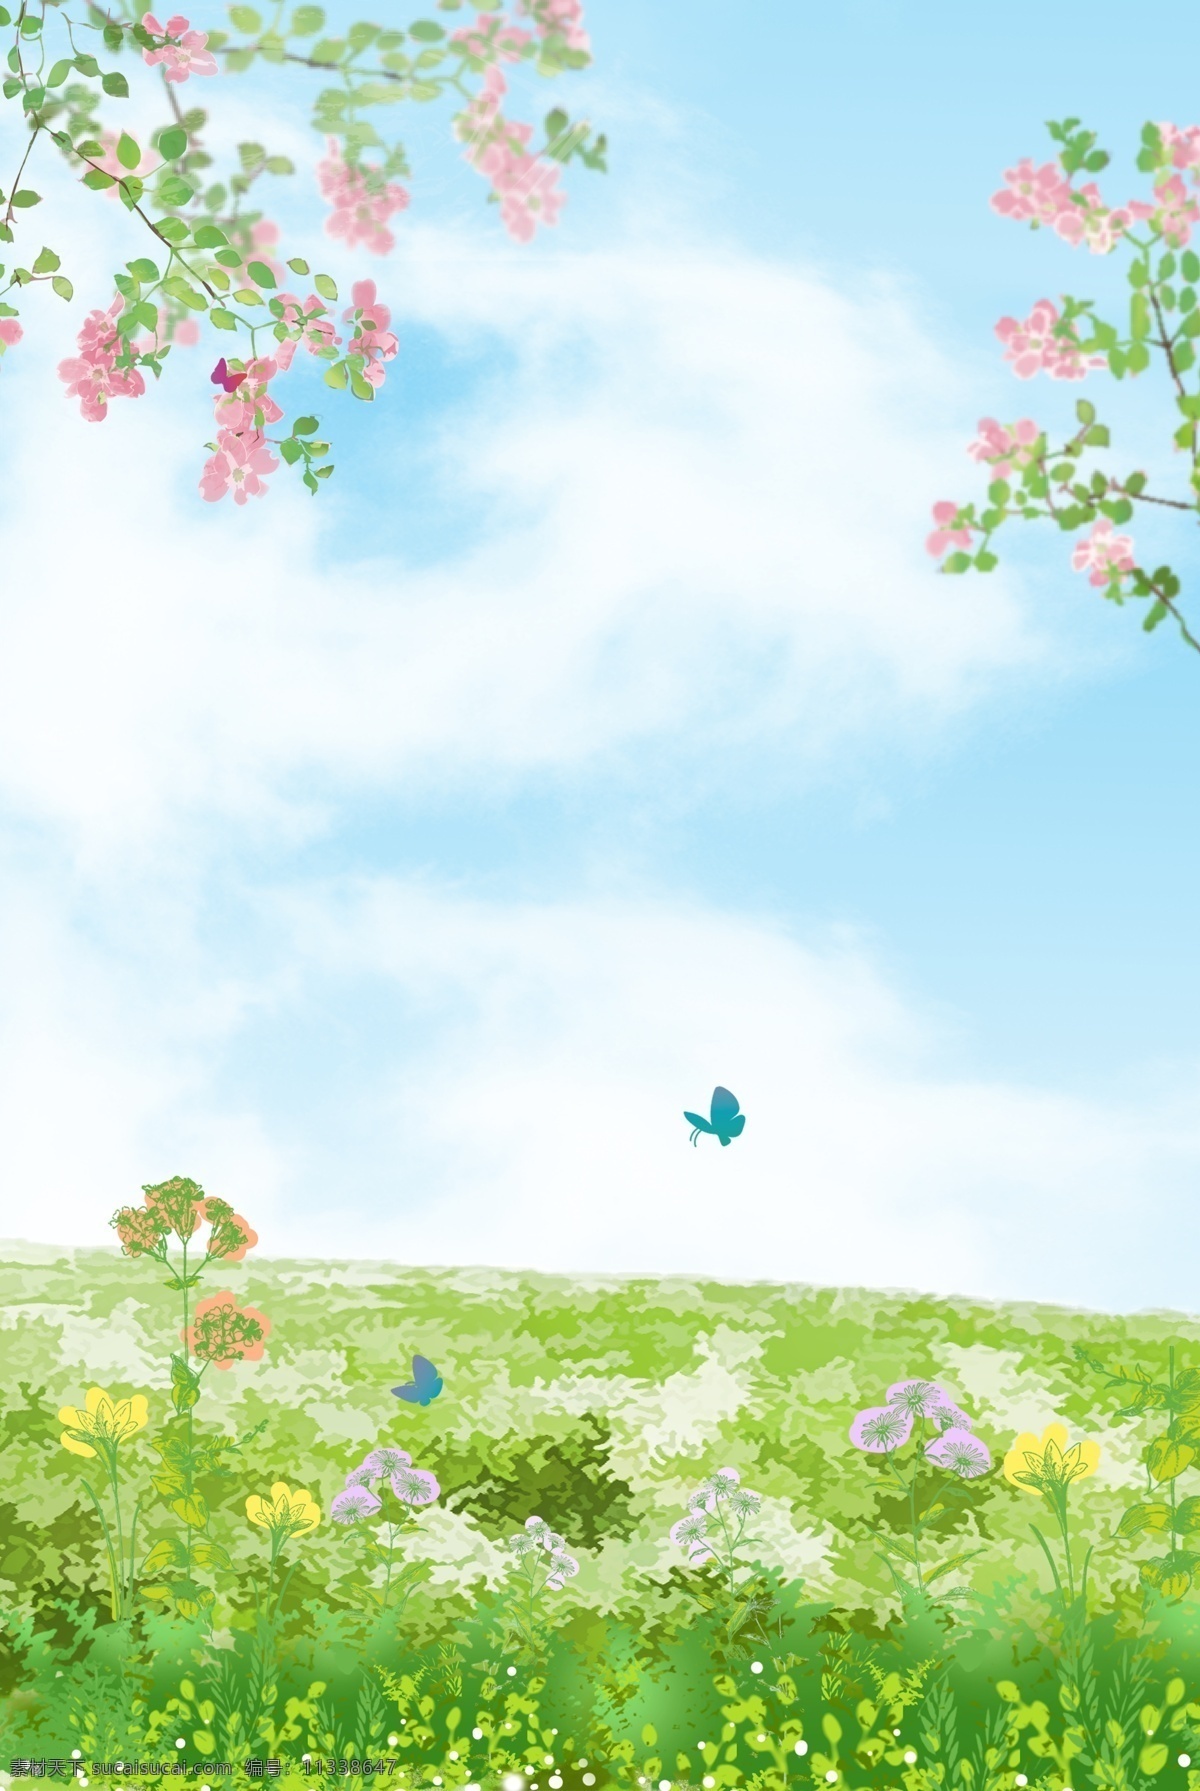 唯美 小清 新手 绘 春天 春分 时节 背景 蓝天 鲜花 卡通 矢量 风景 手绘 惊蛰 简约 大气 节气